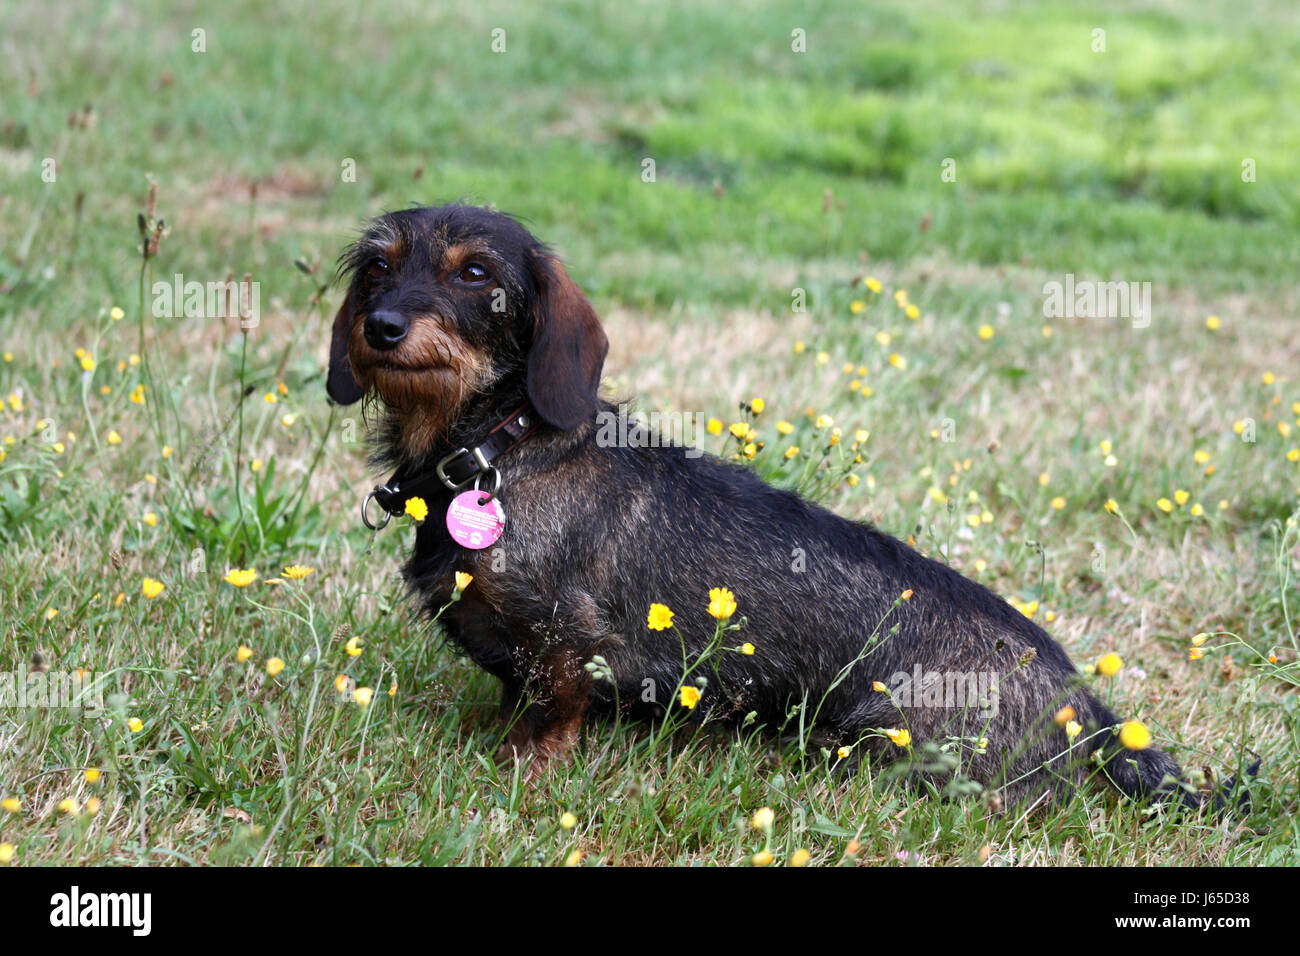 Hund Dackel Hund Basset kleine winzige kleine kurze Hund Sitz Dackel  Stockfotografie - Alamy